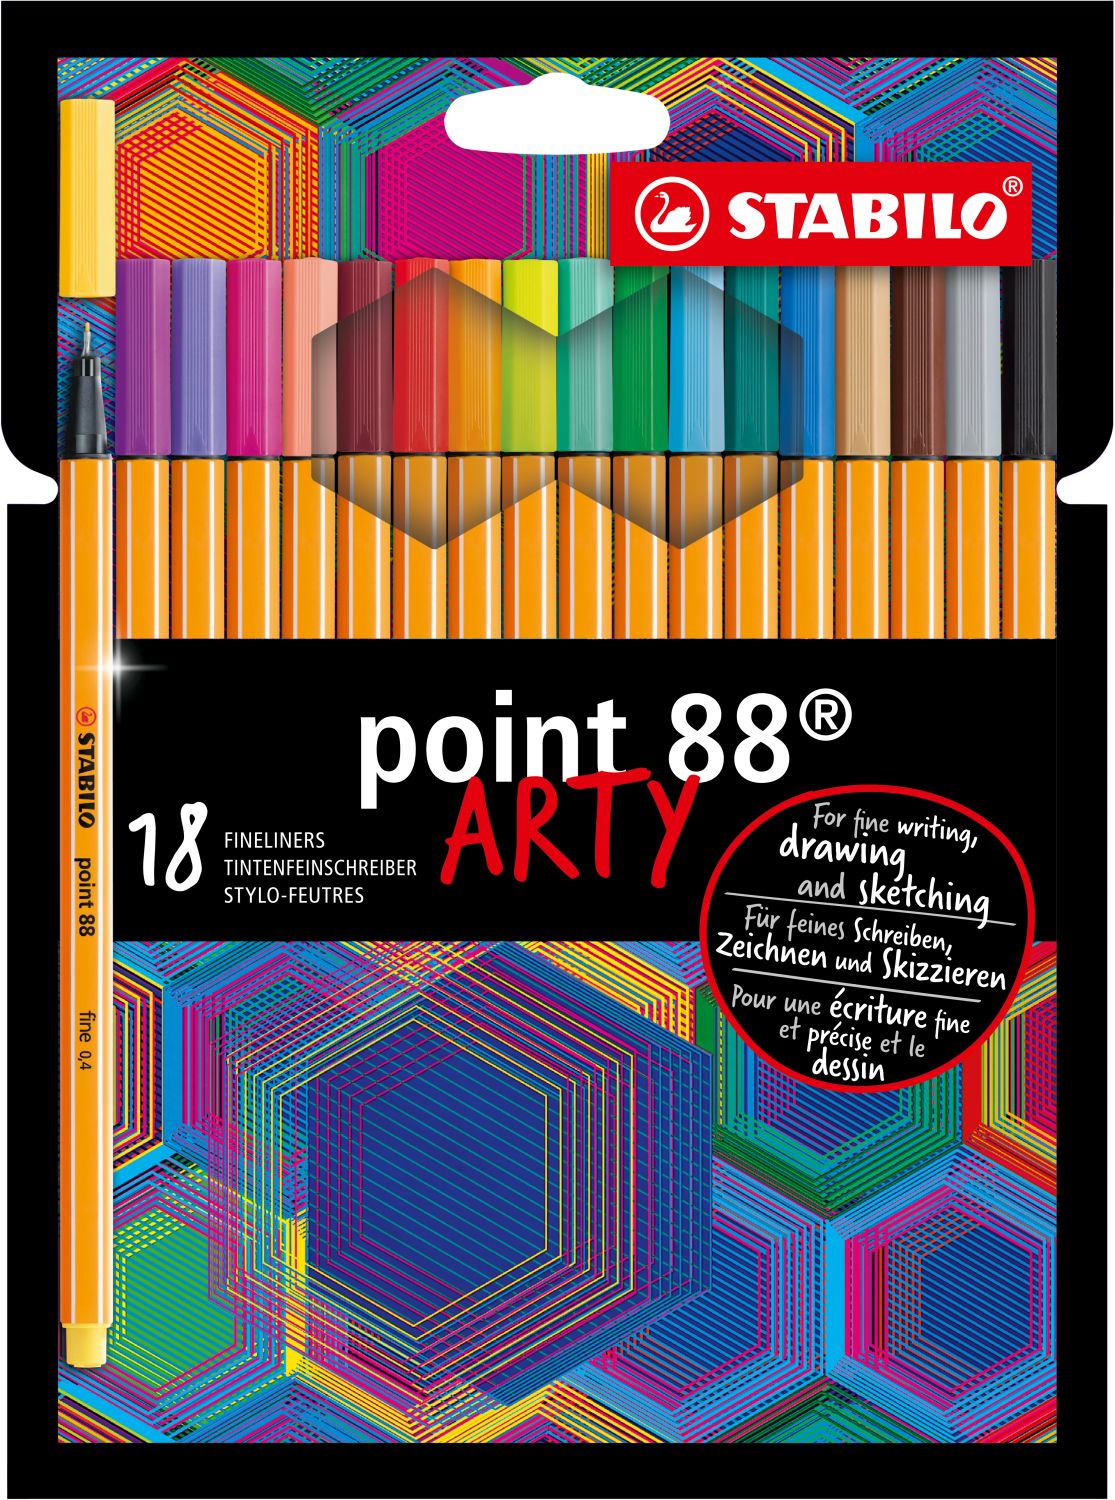 Fineliner - point 88 - ARTY - 18er Pack - mit 18 verschiedenen Farben